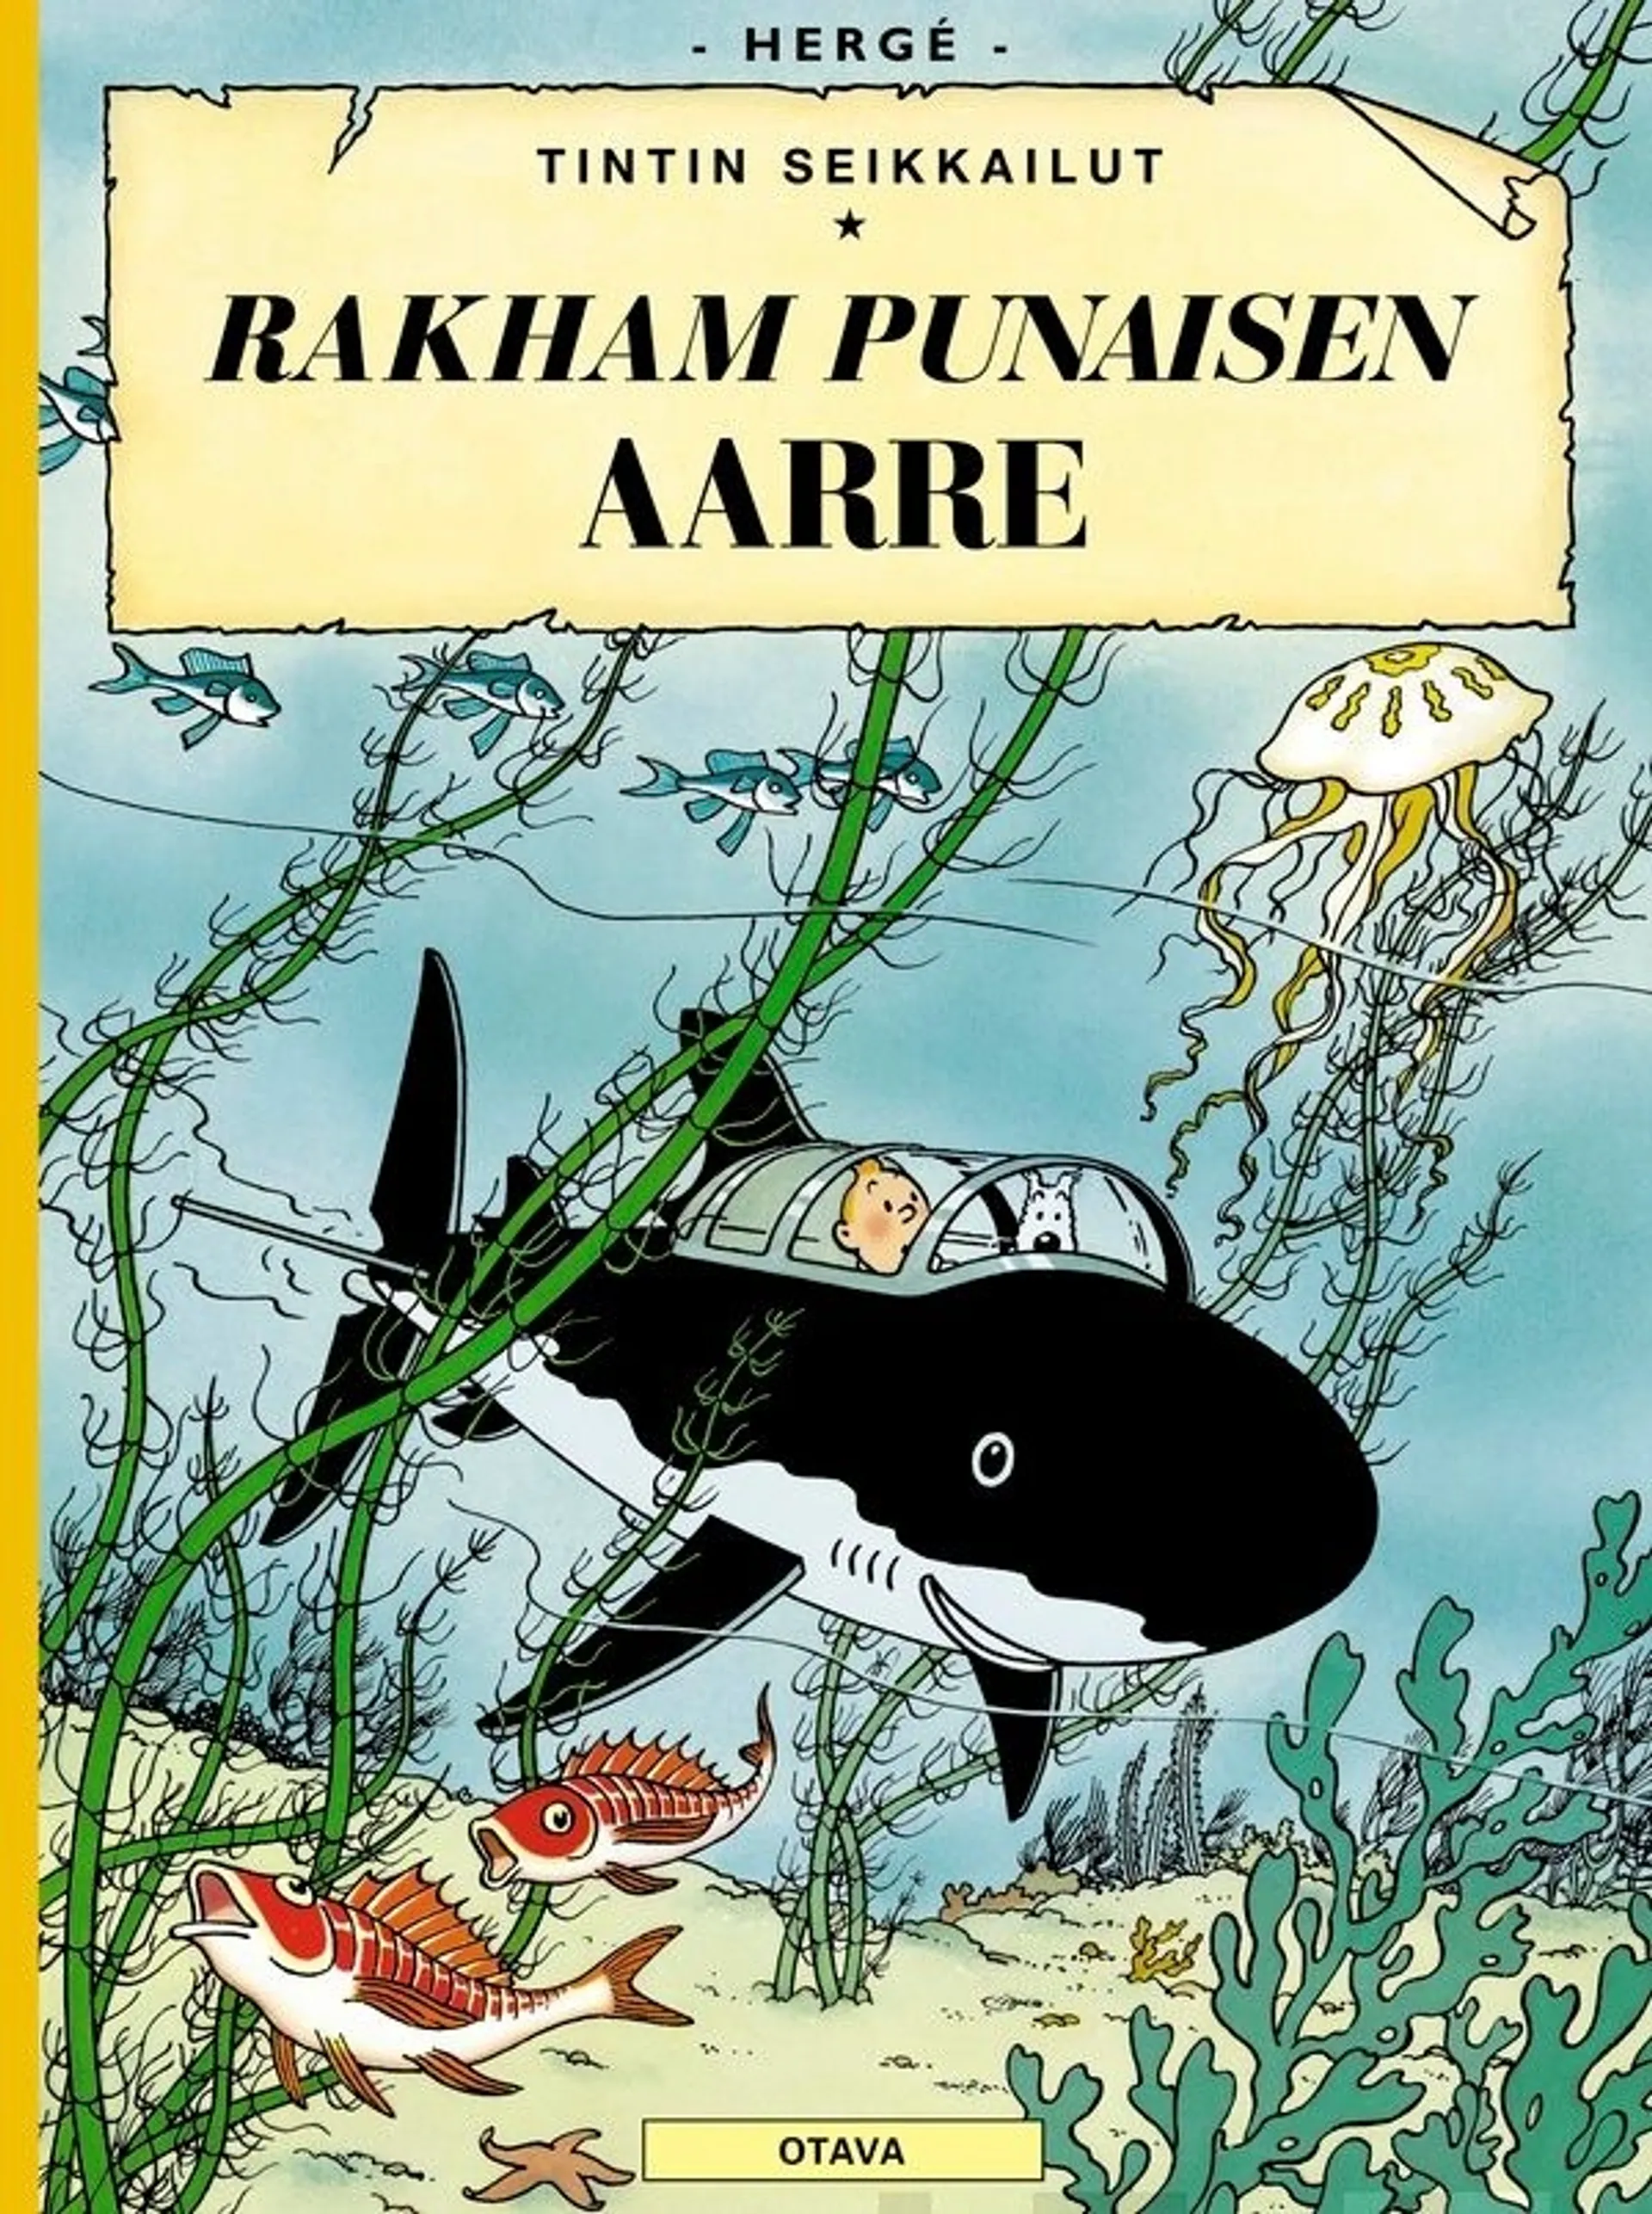 Hergé, Rakham punaisen aarre - Tintin seikkailut 12